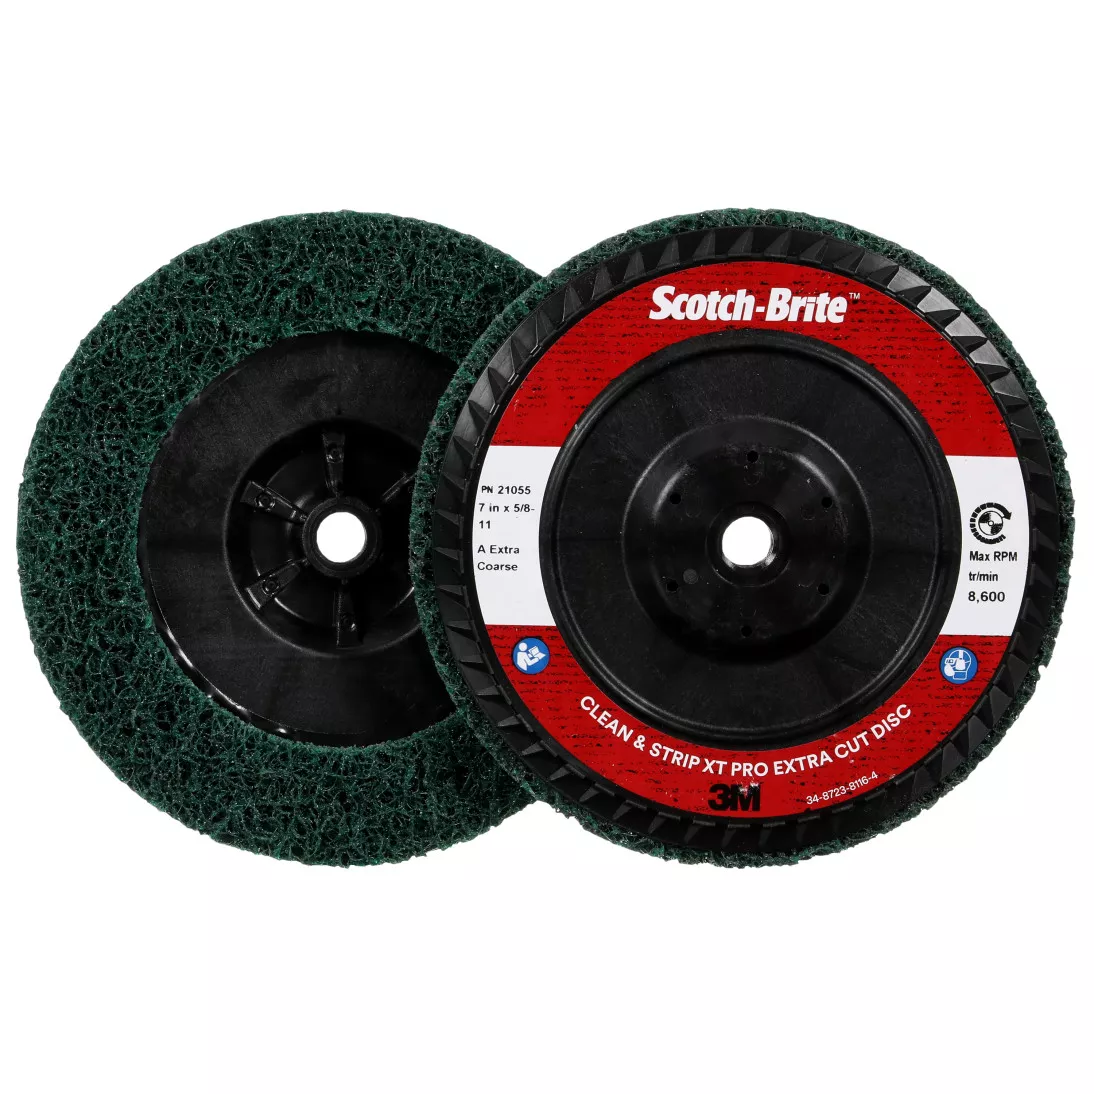 Scotch-Brite™ Clean and Strip XT Pro Extra Cut Disc, XC-DC, A/O Extra
Coarse, Green, 7 in x 5/8